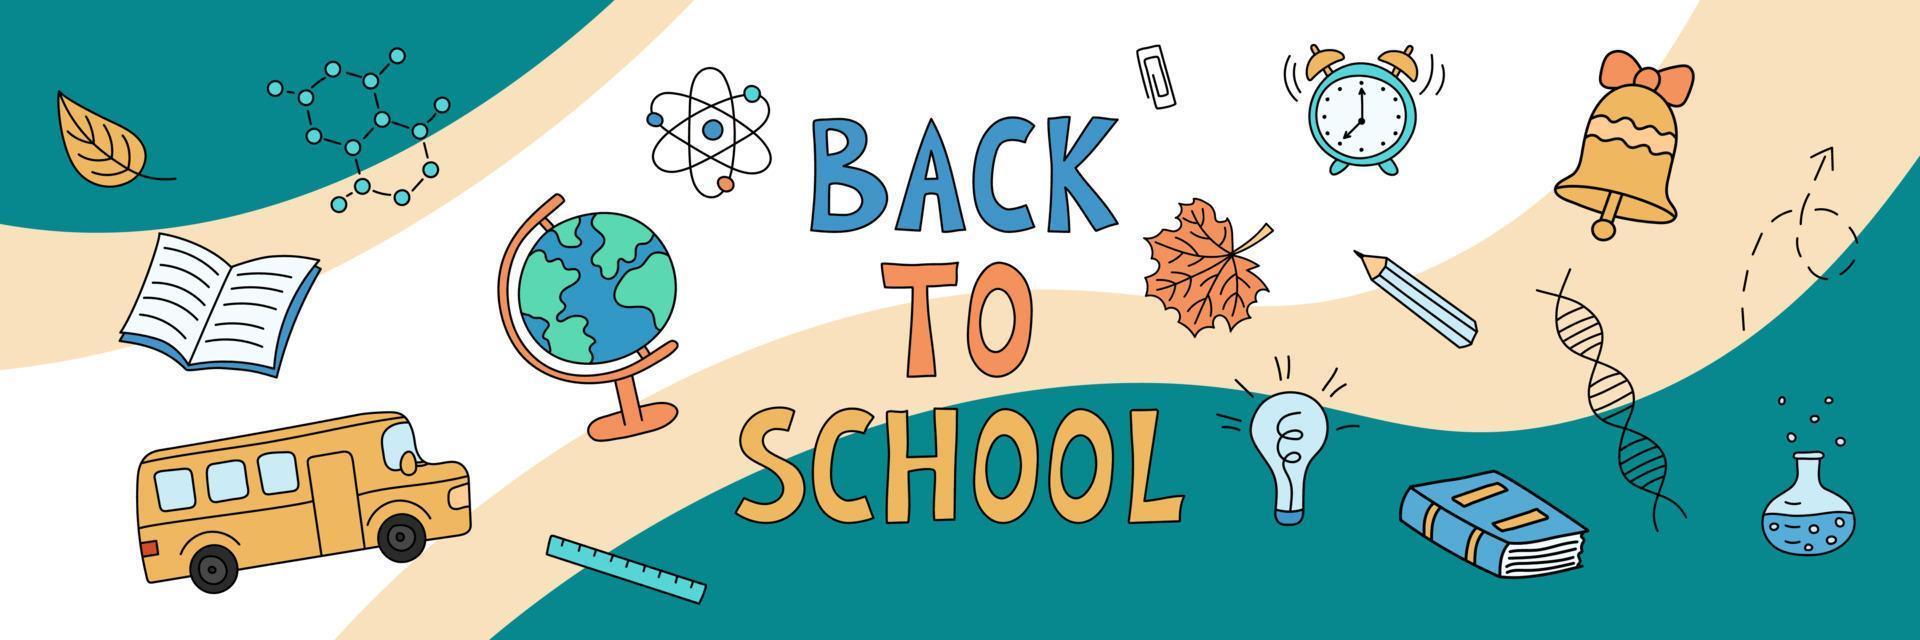 banner web di ritorno a scuola. oggetti di doodle di scuola su sfondo astratto. illustrazione disegnata a mano di vettore di elementi educativi